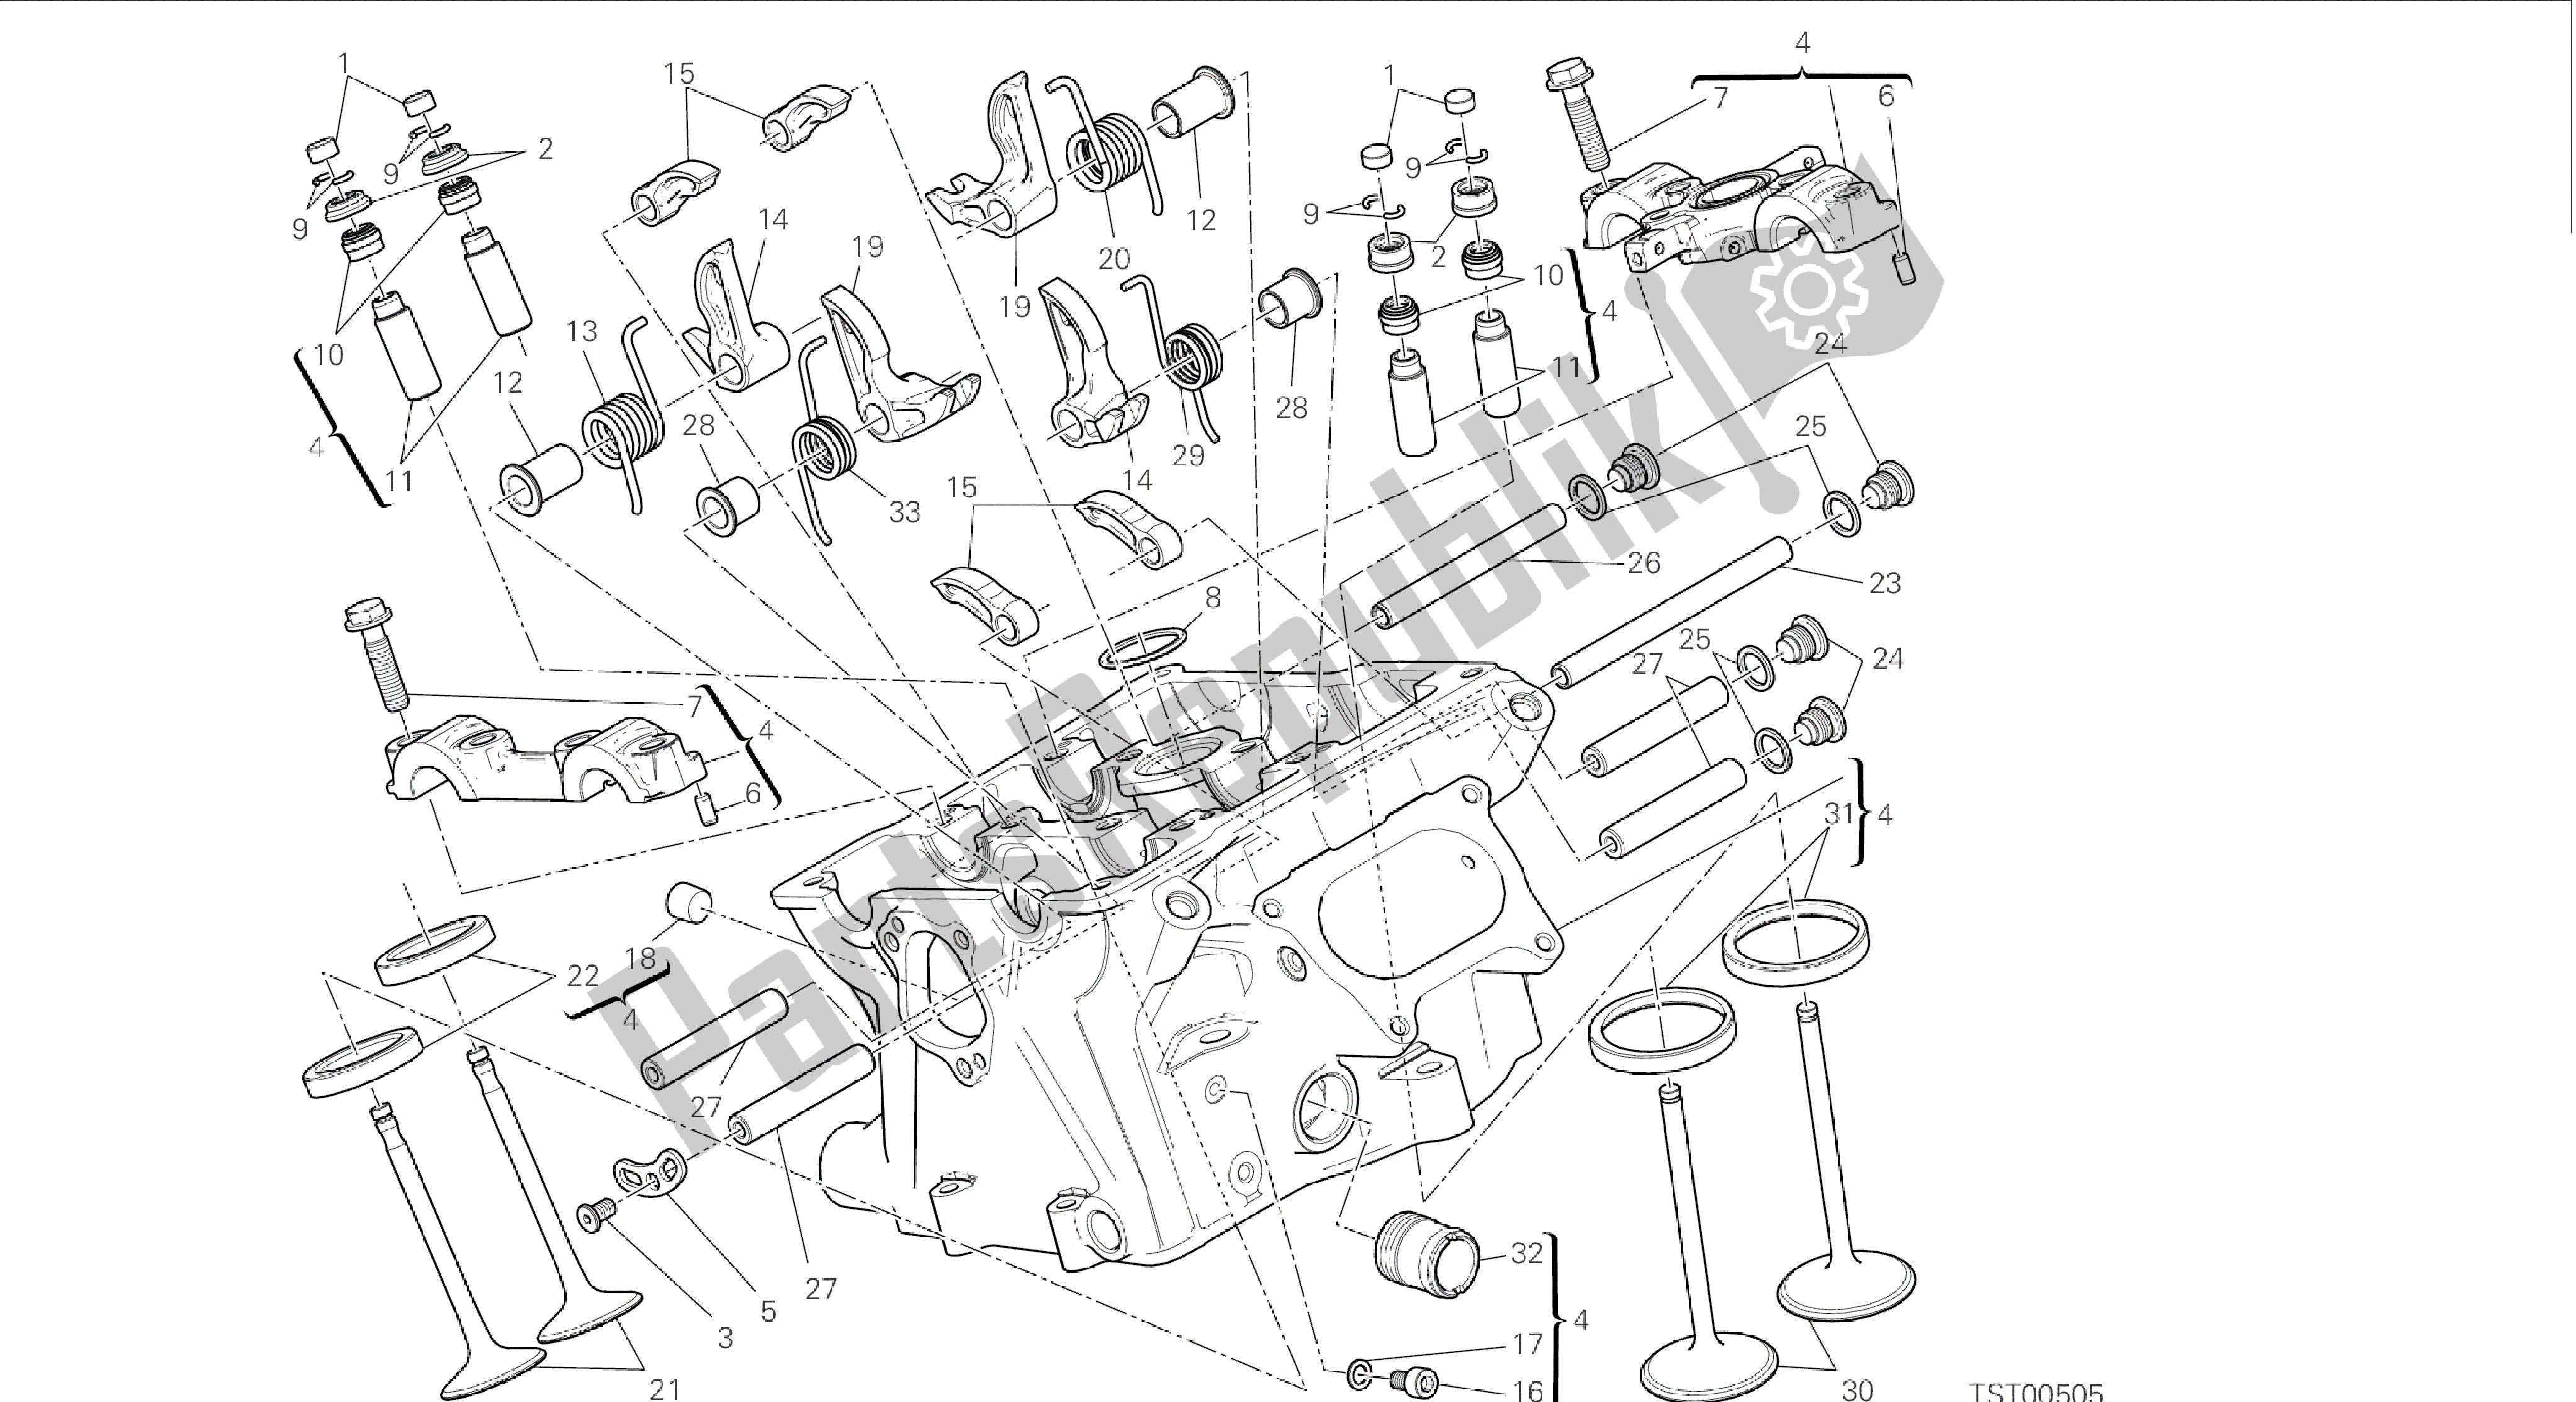 Tutte le parti per il Disegno 015 - Motore Di Gruppo Testa Verticale [mod: 899 Abs, 899 Aws] del Ducati Panigale 899 2015